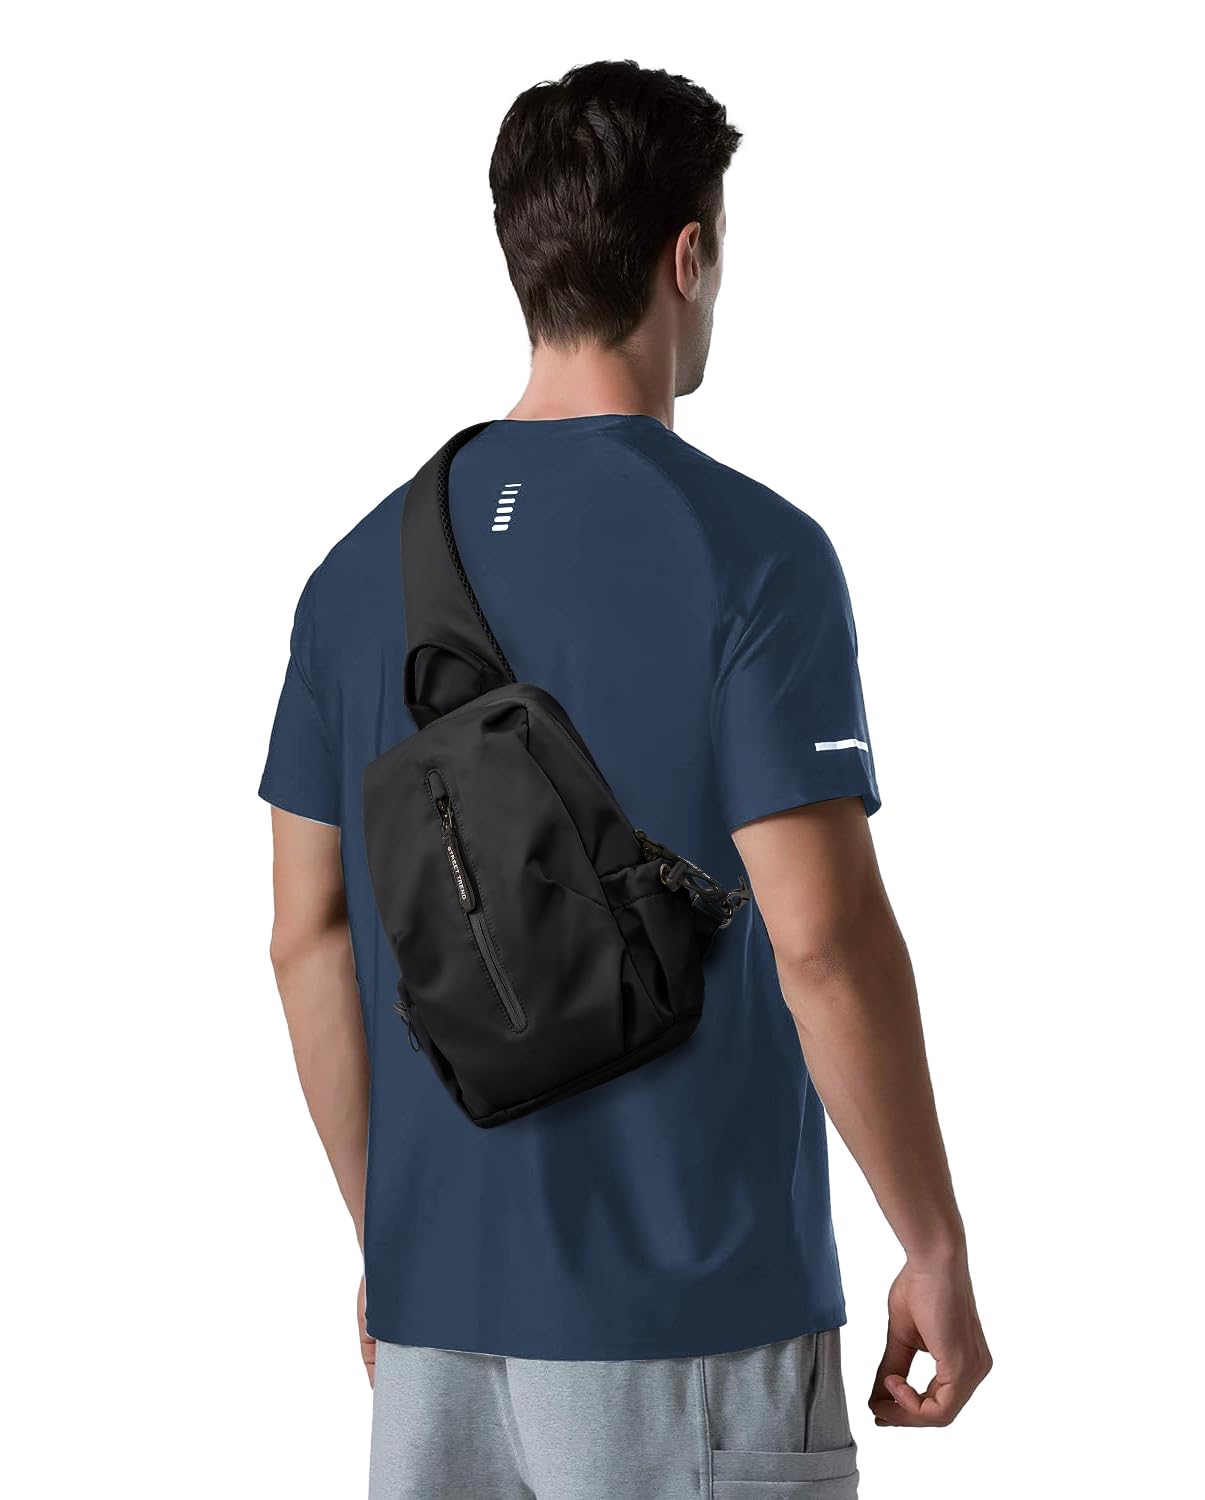 WEPLAN Sling Bag for Men,Crossbody Bag for Women,Chest Bag Daypack for Travel Sport Hiking Sling Backpack